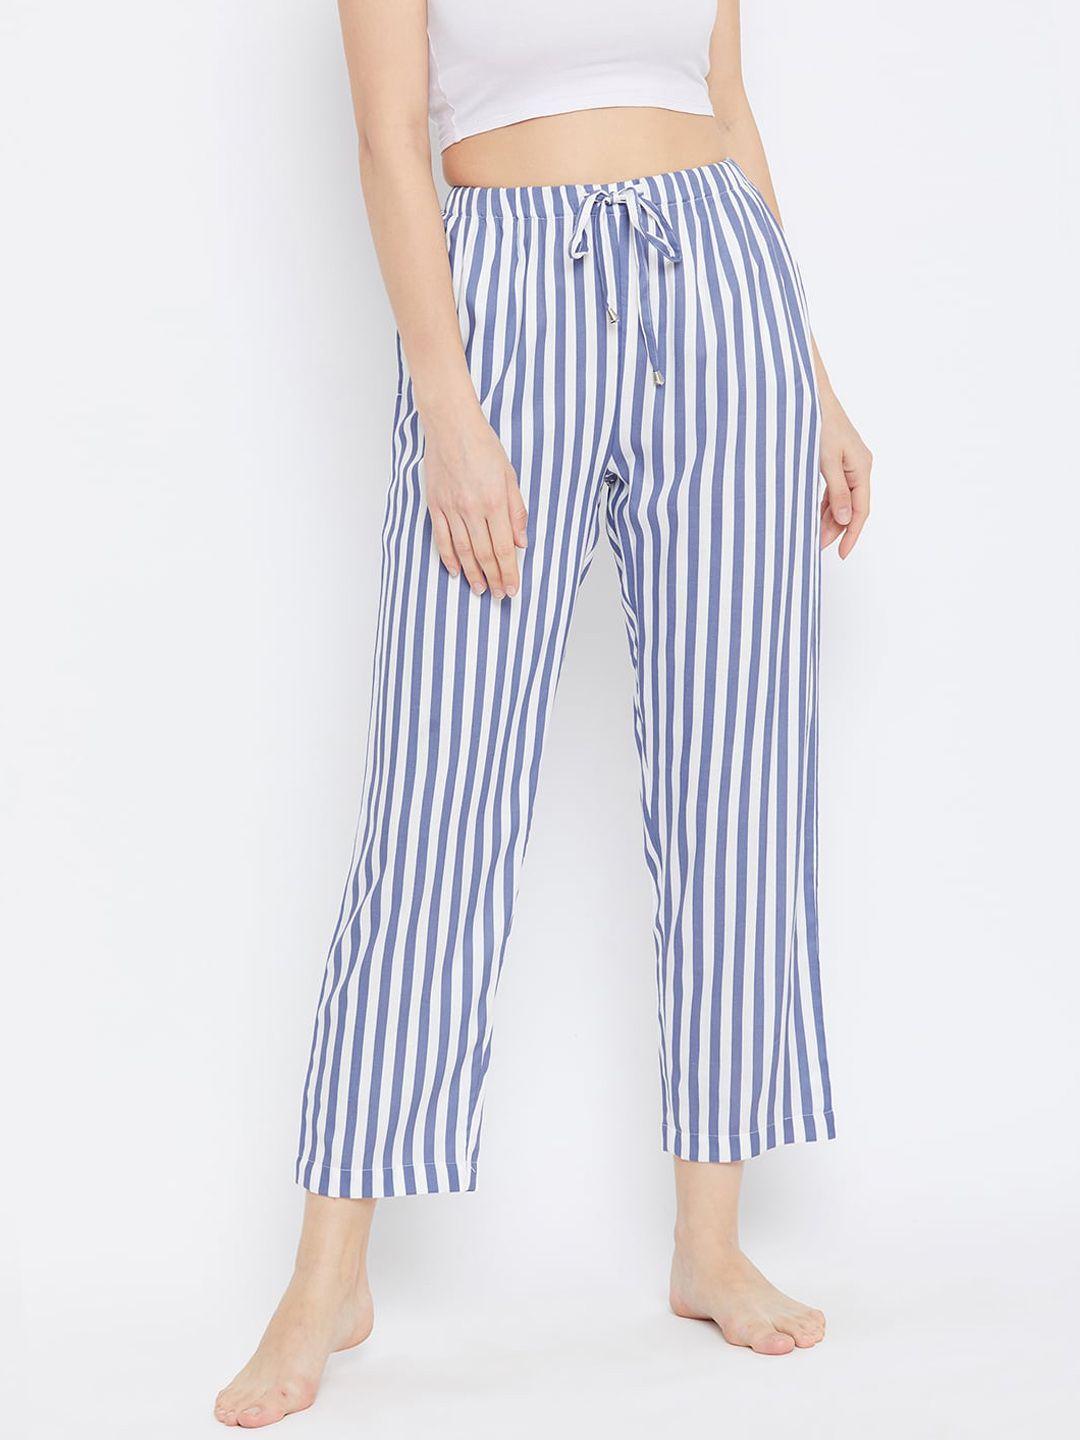 hypernation women white & blue striped lounge pants